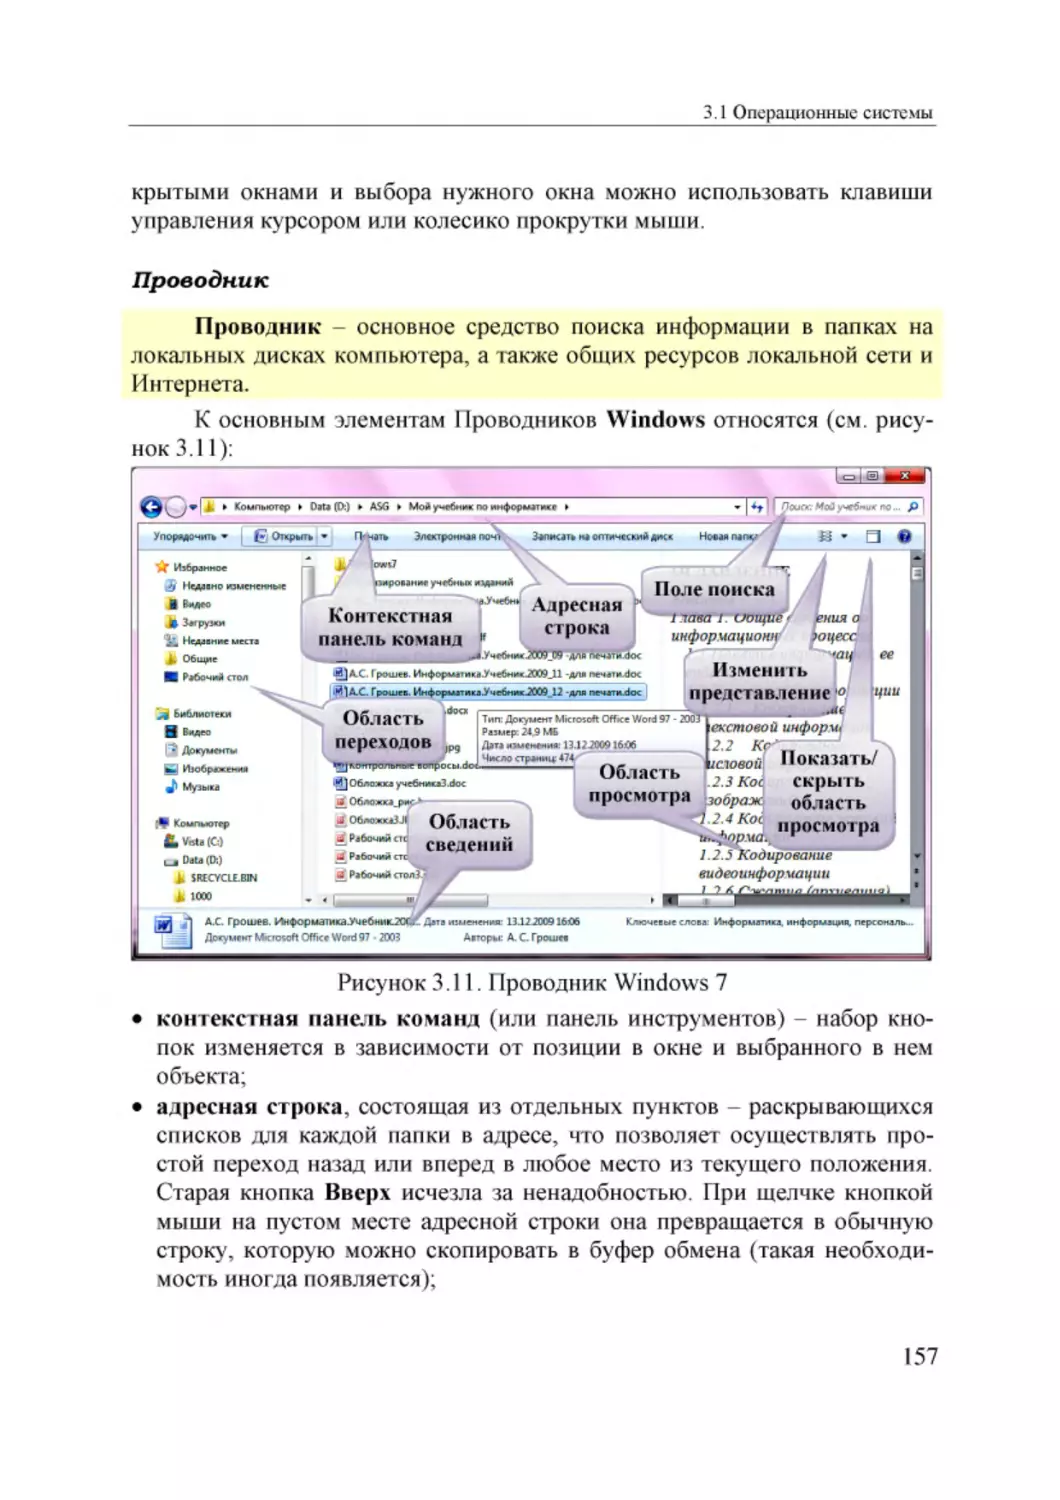 Informatika_Uchebnik_dlya_vuzov_2010 157